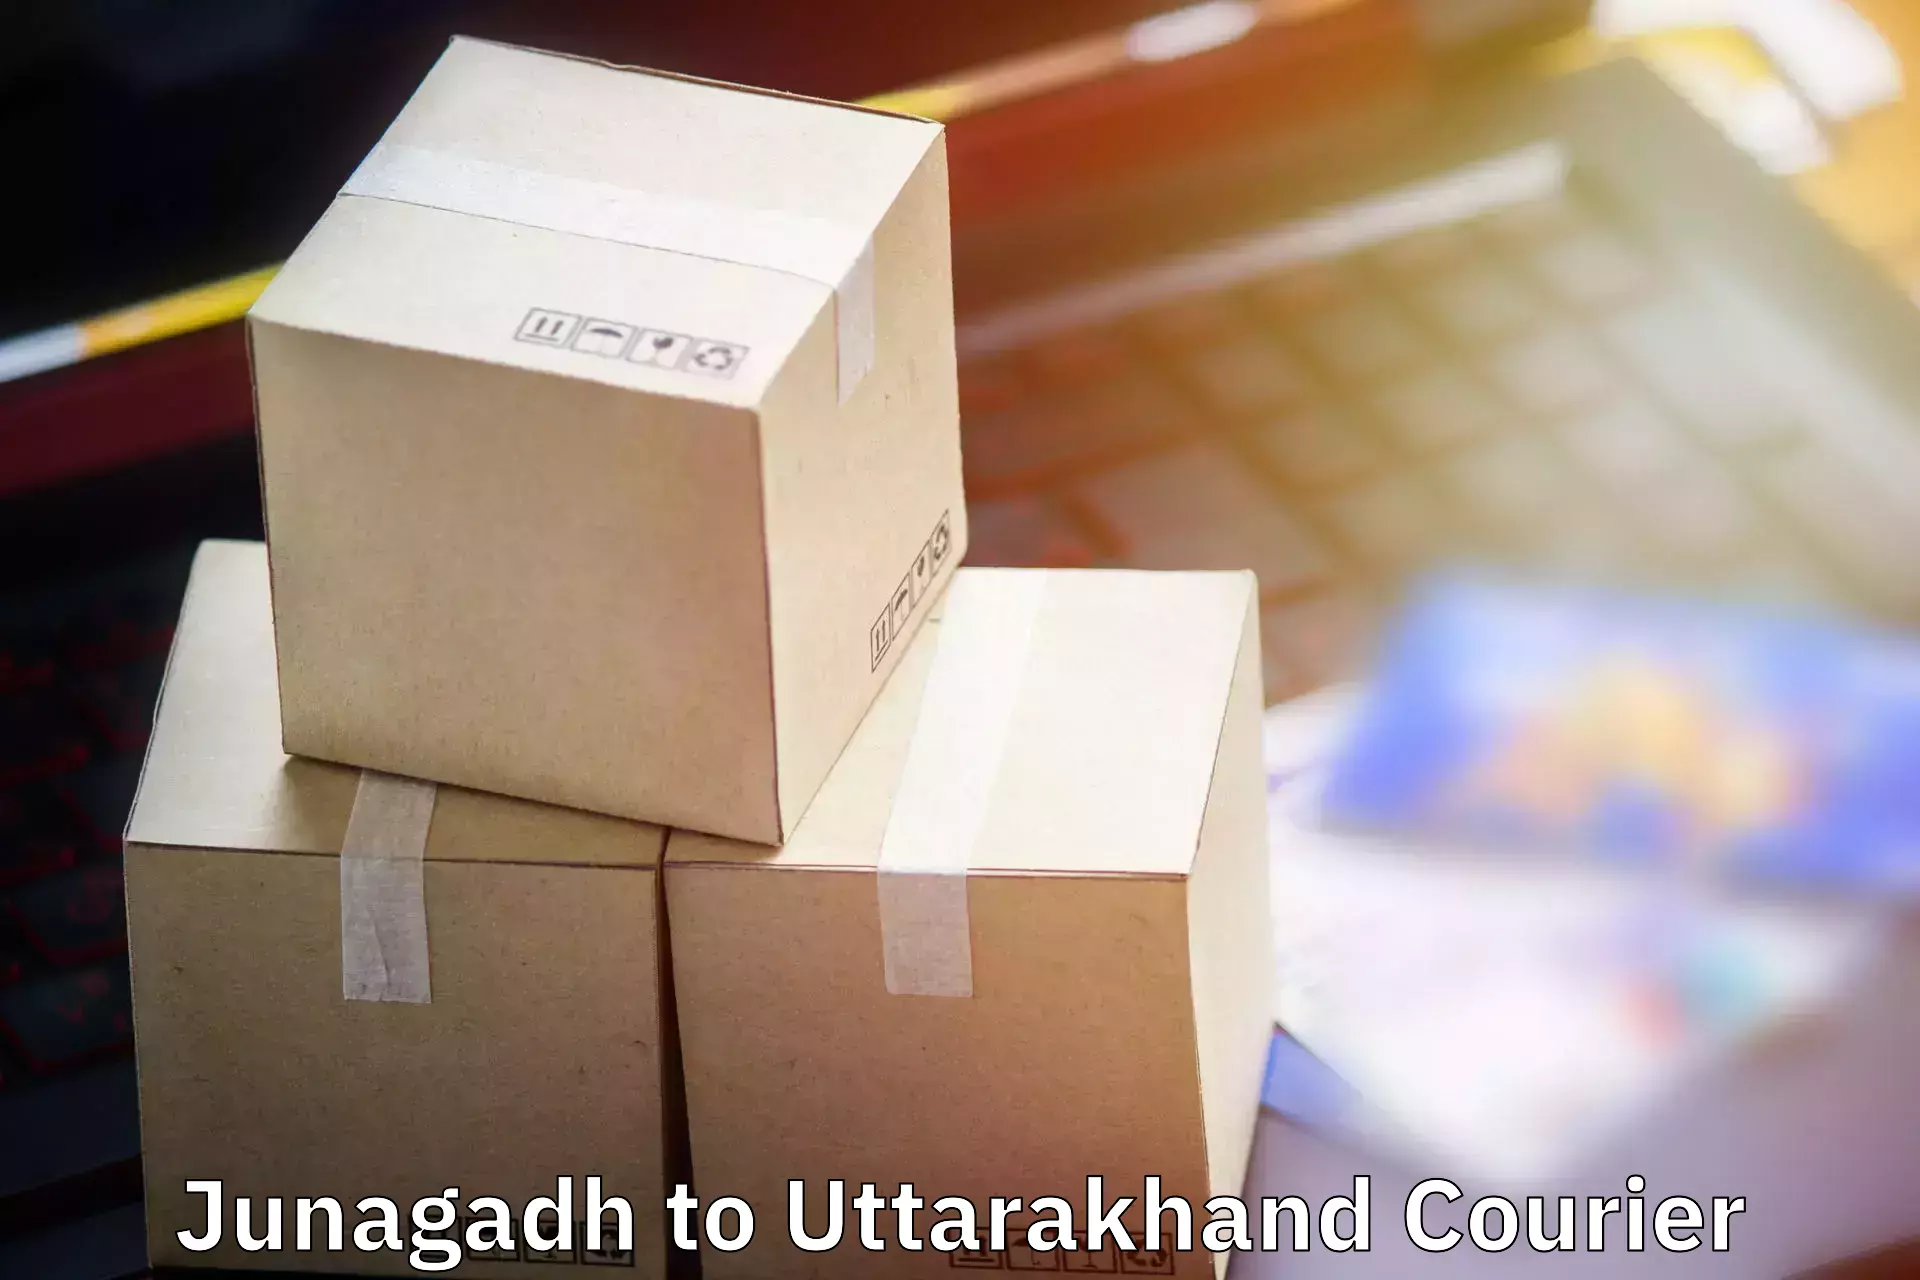 Luggage transport consultancy Junagadh to Dwarahat